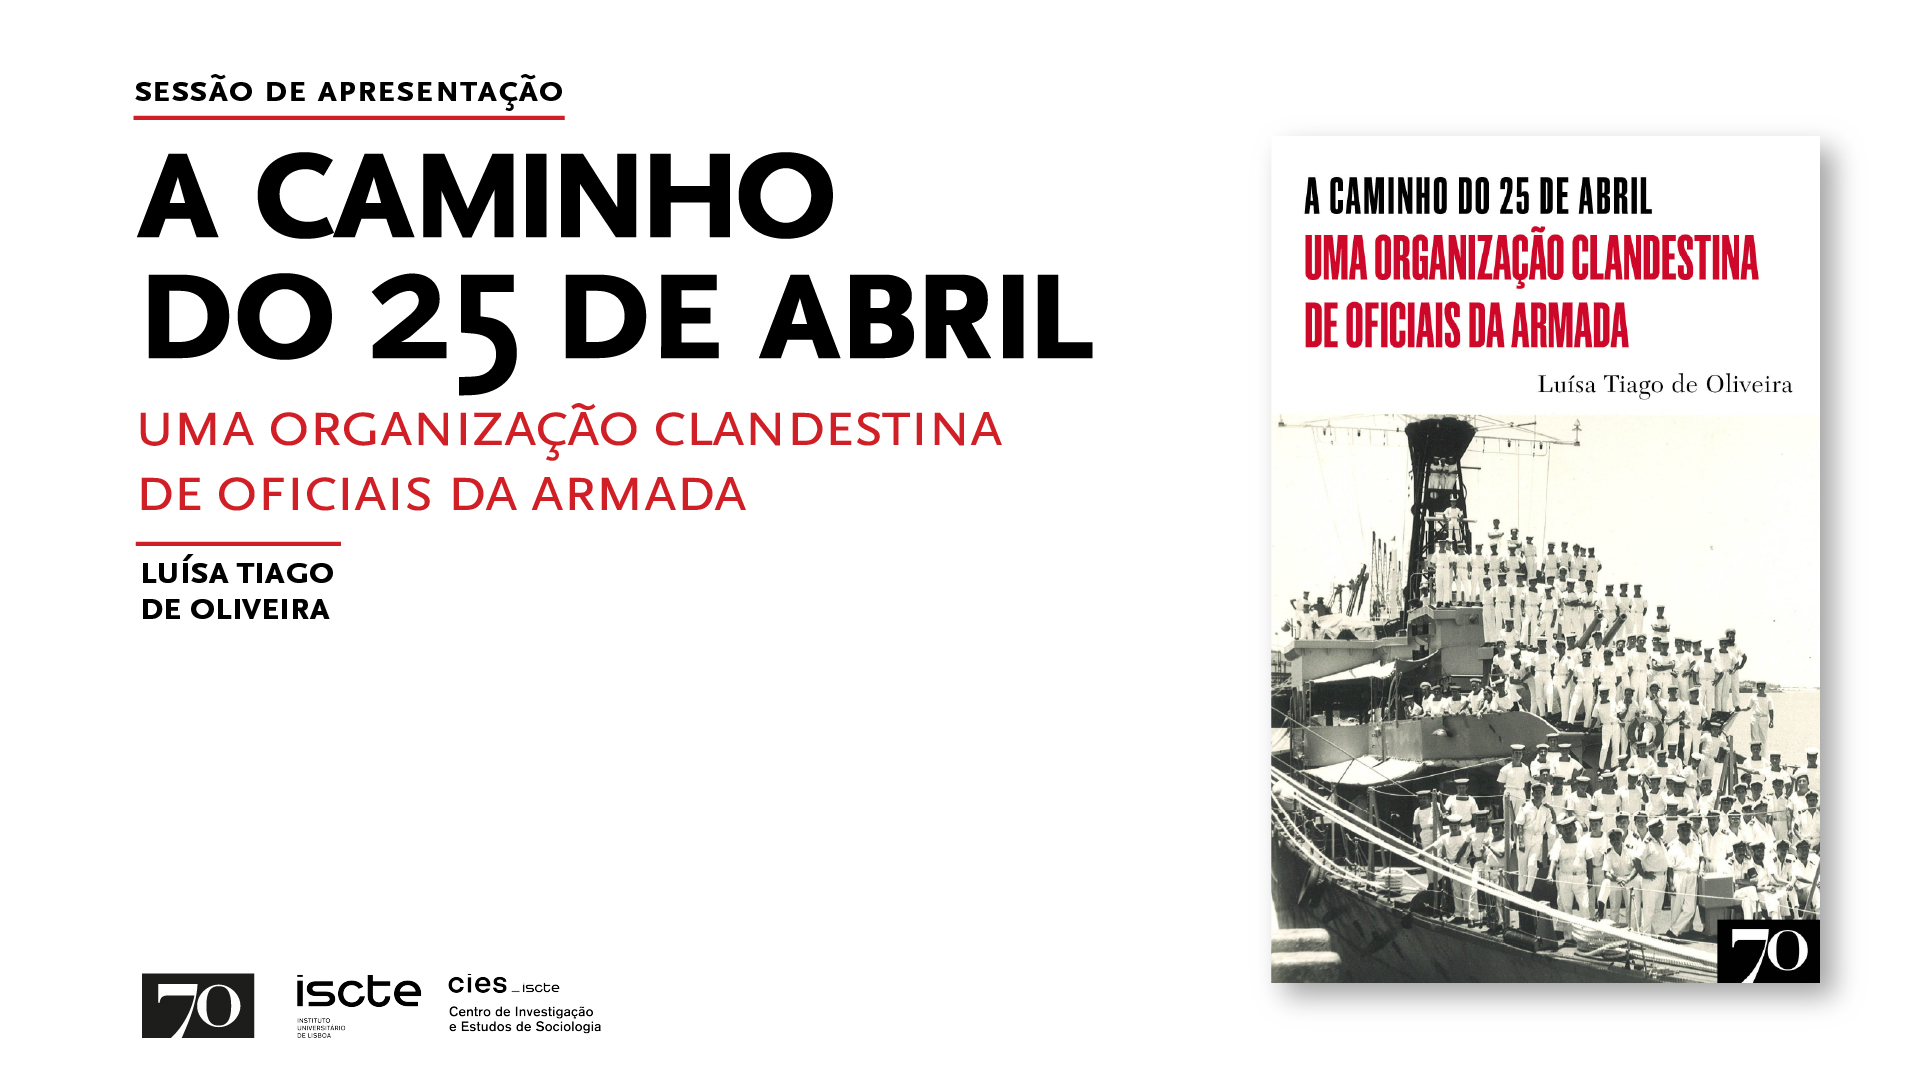 "A Caminho do 25 de Abril – Uma Organização Clandestina de Oficiais da Armada"